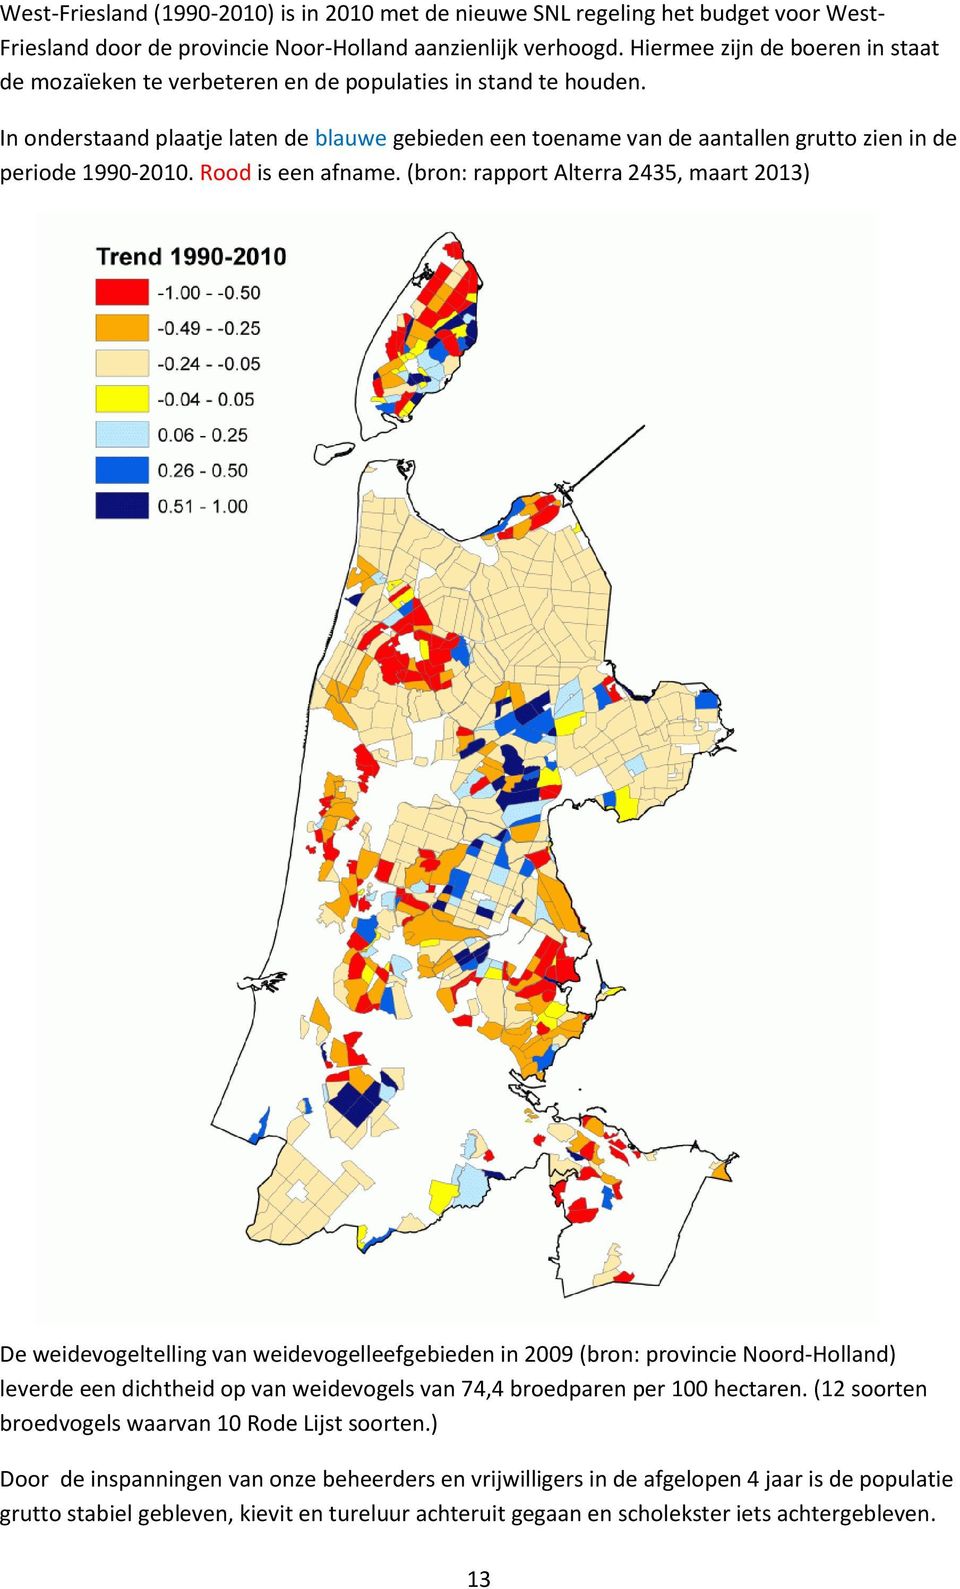 In onderstaand plaatje laten de blauwe gebieden een toename van de aantallen grutto zien in de periode 1990-2010. Rood is een afname.